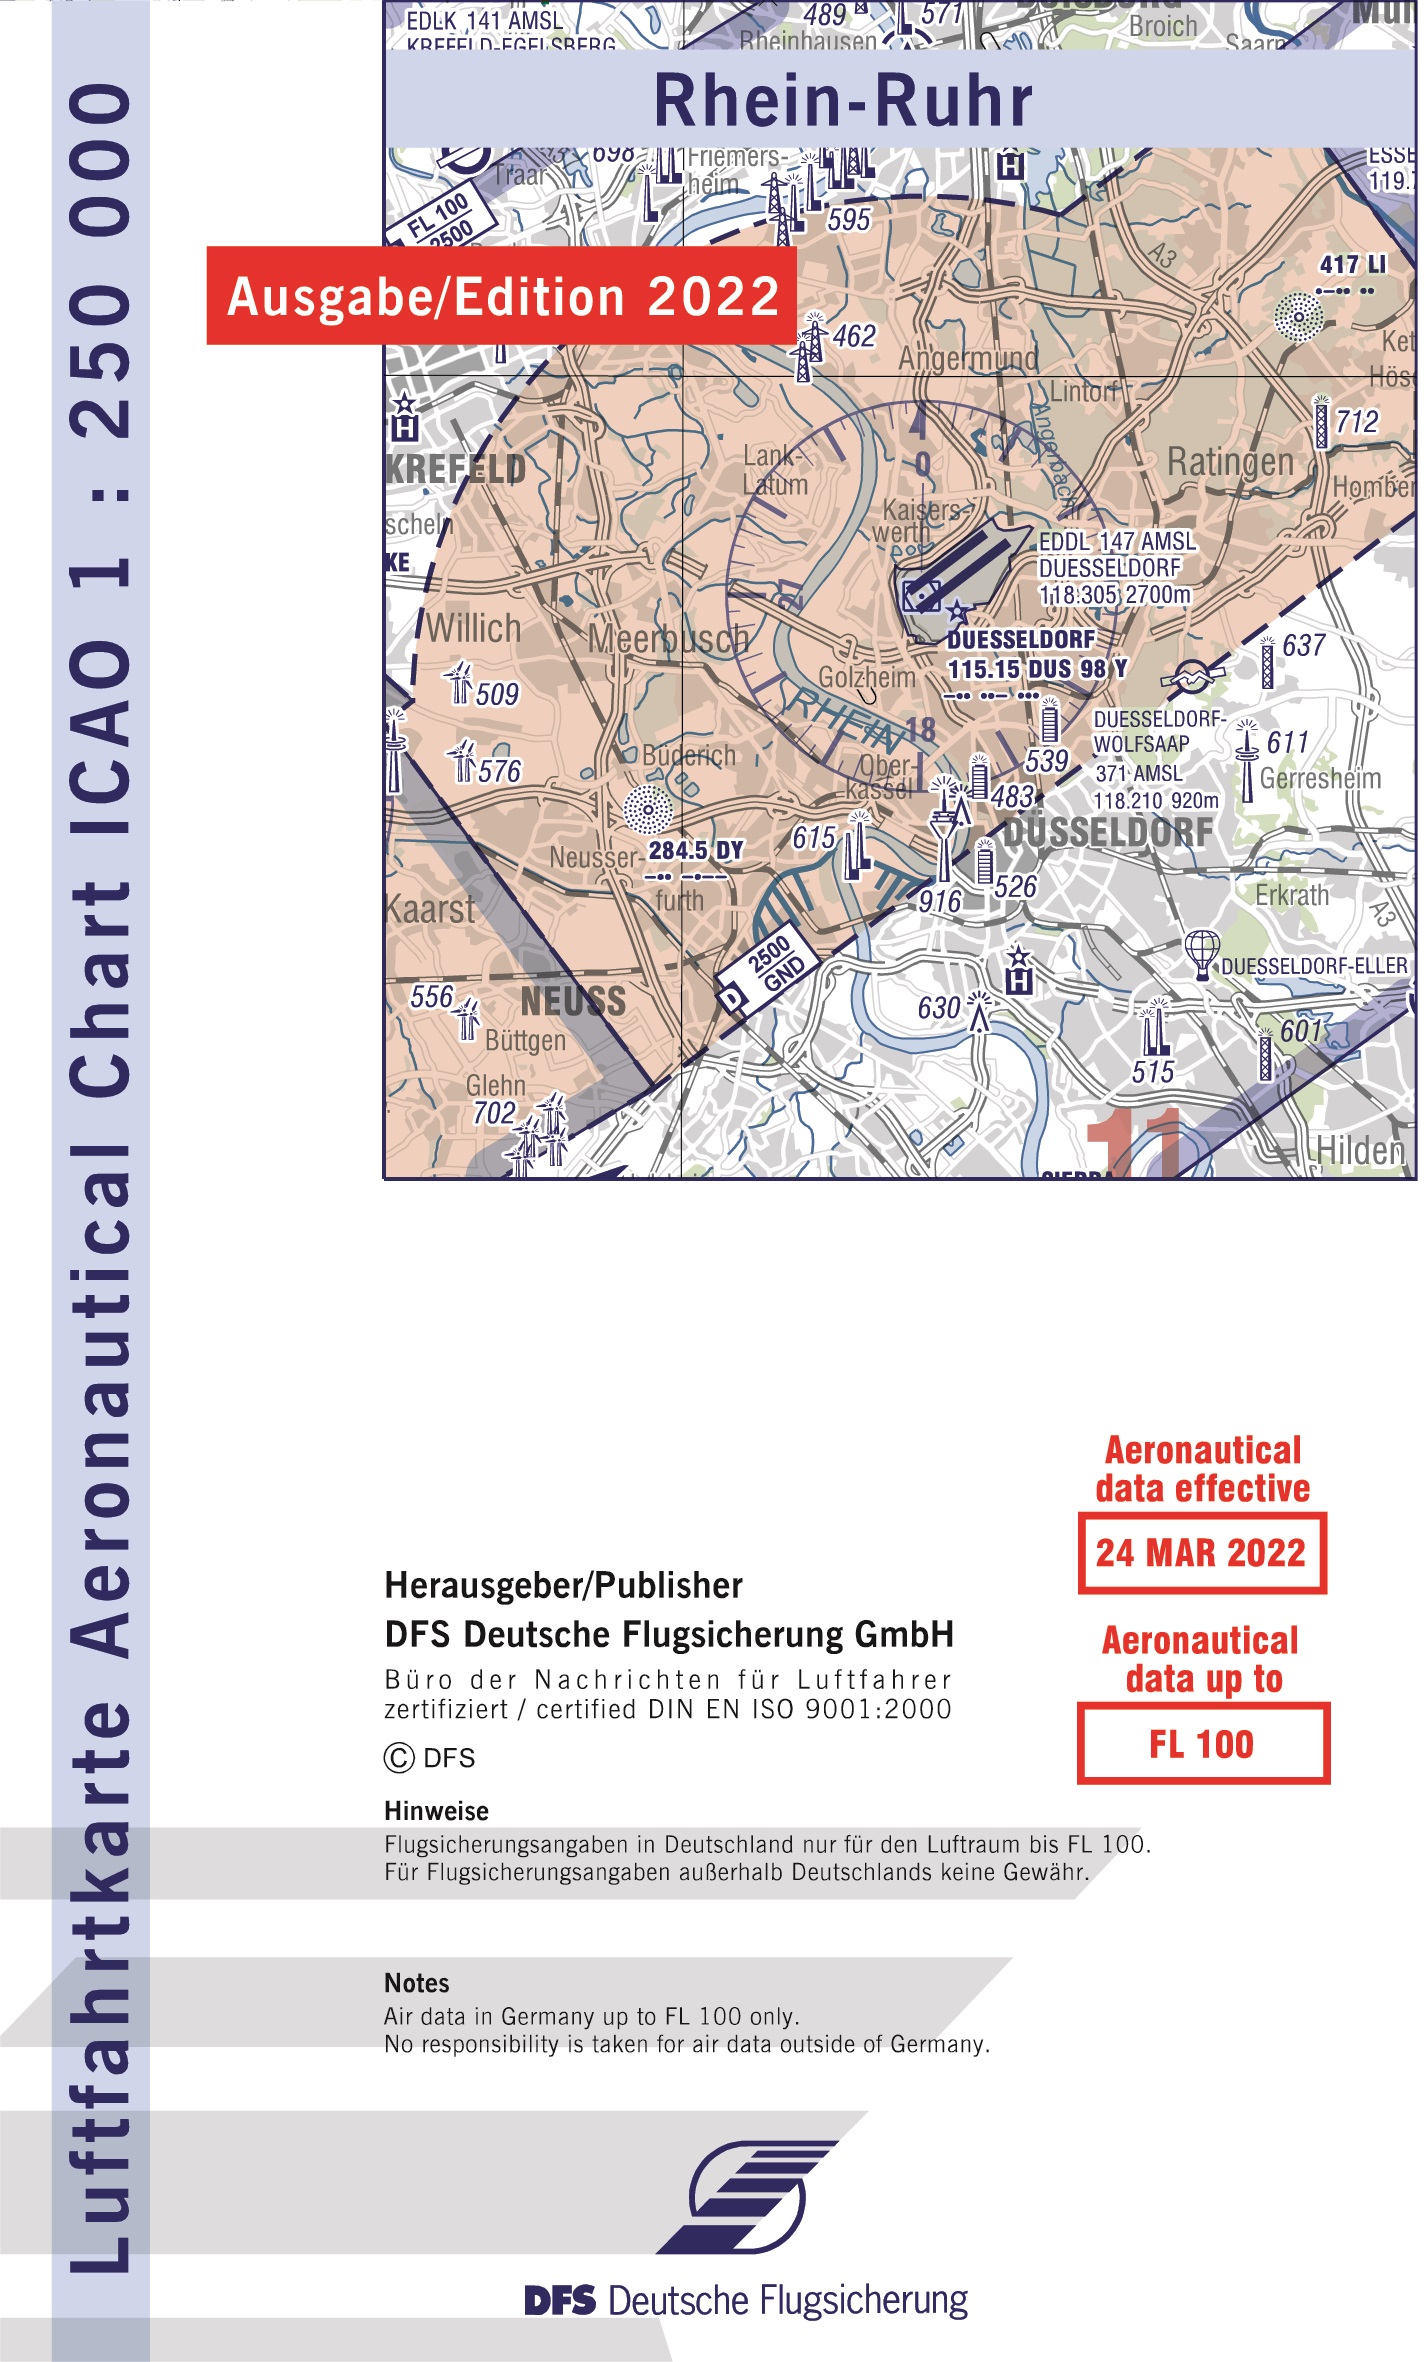 DFS ICAO Flugkarte Deutschland Blatt Hamburg Ausgabe 2019 